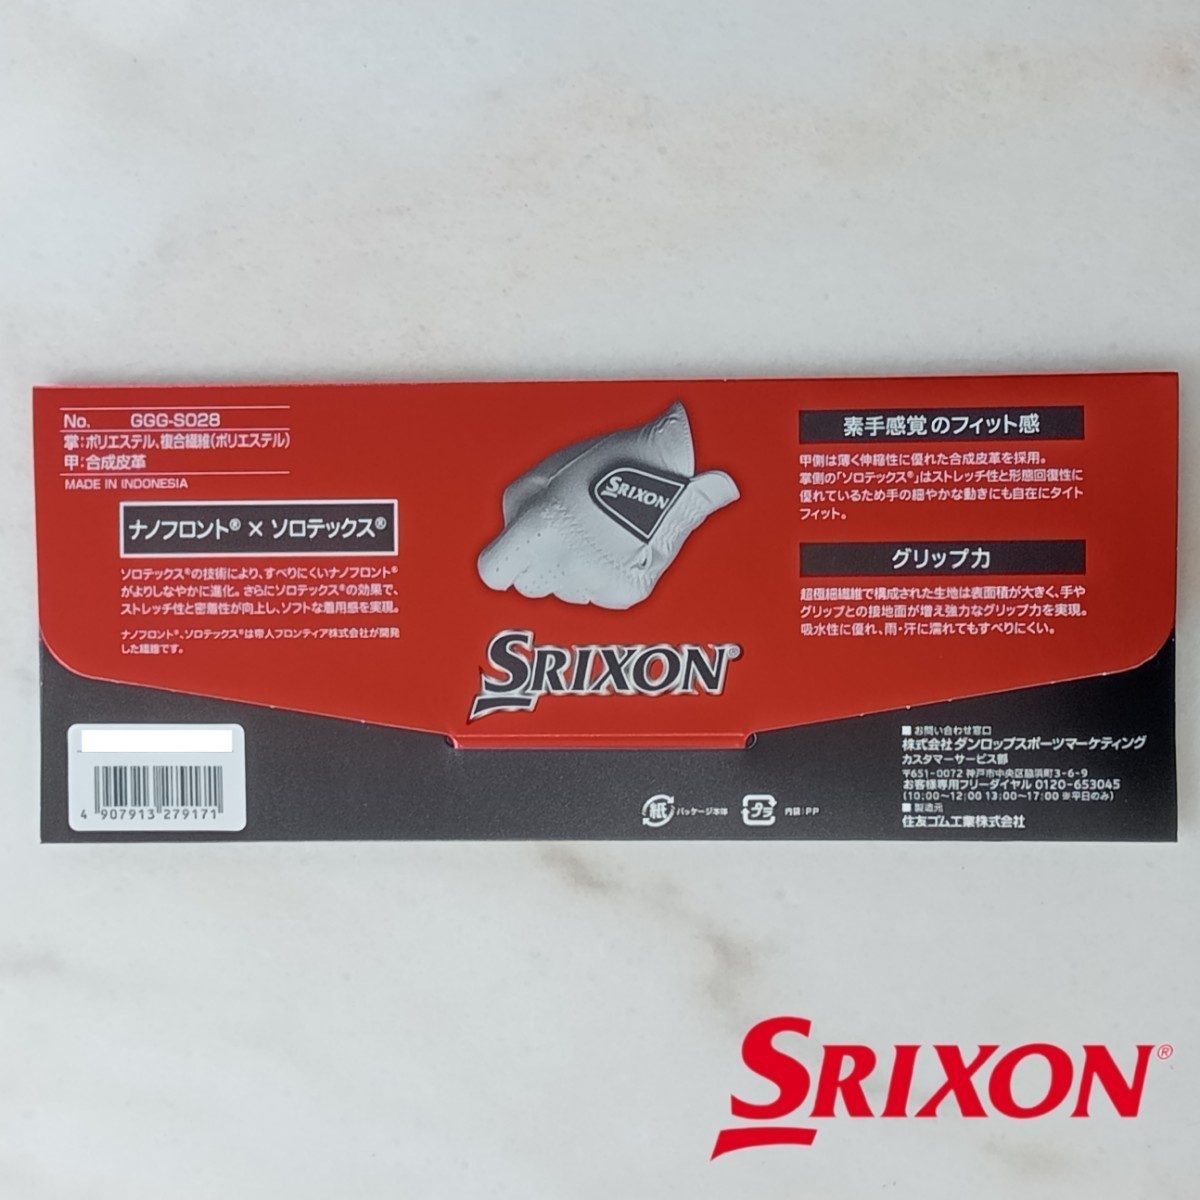 スリクソン 23cm 白 3枚セット GGG-S028 ダンロップ ゴルフグローブ 新品未使用品 ゴルフ用品 SRIXON PRO SERIES 薄手 ホワイト グローブの画像6